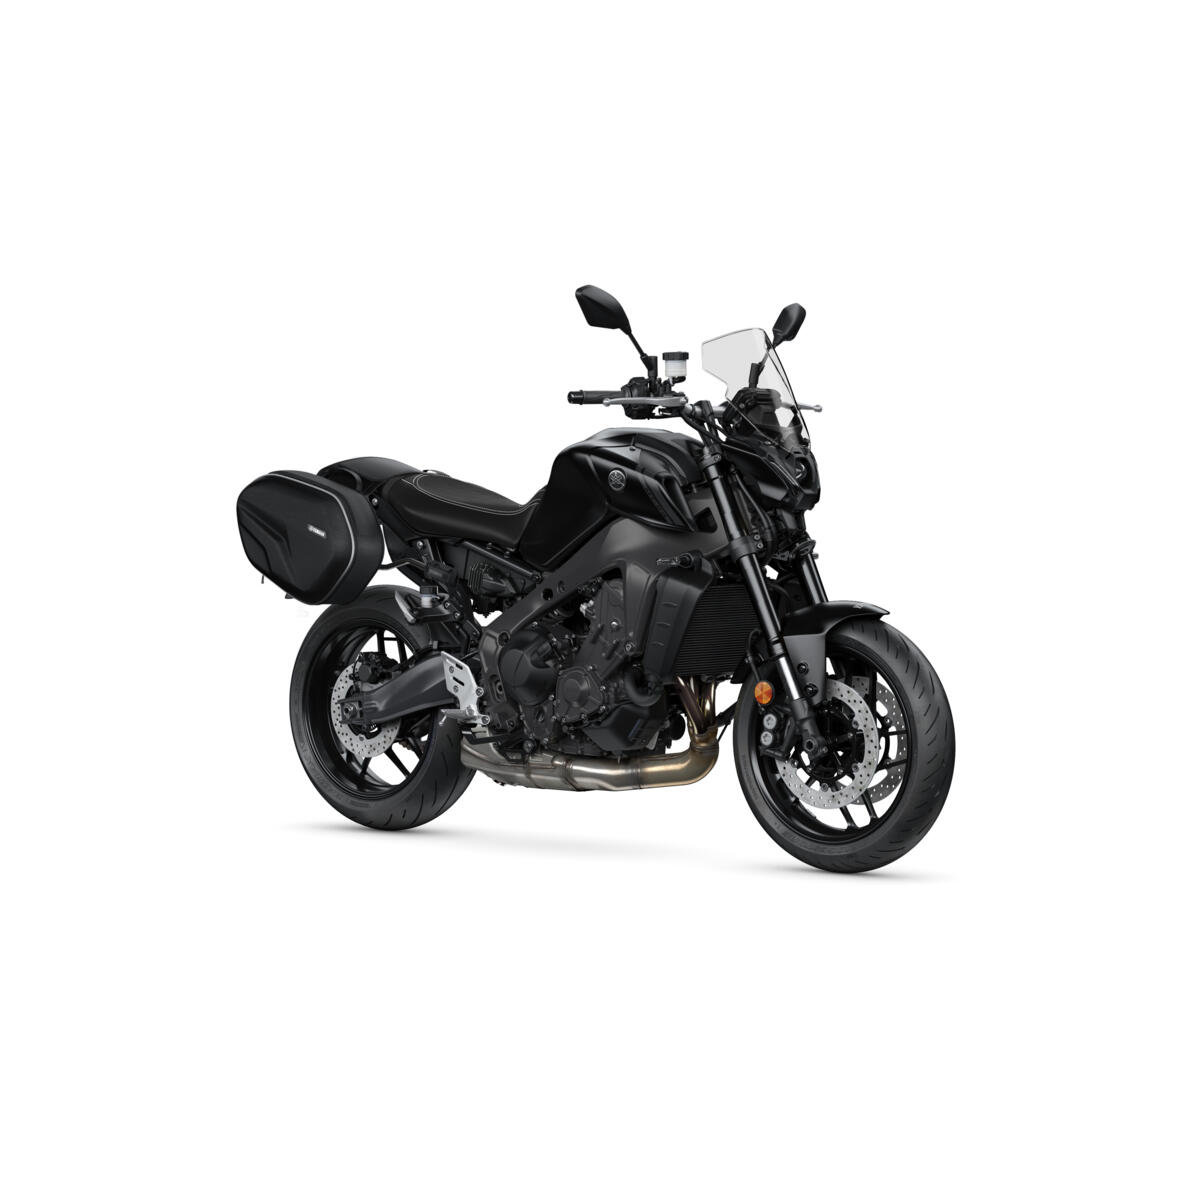 La position de conduite naturelle et l’excellente autonomie en carburant font de la MT-09 la moto parfaite pour partir en excursion le week-end. 
Yamaha a donc créé le pack week-end pour vous faire profiter de chaque minute de votre temps, que vous soyez sur votre moto ou non.